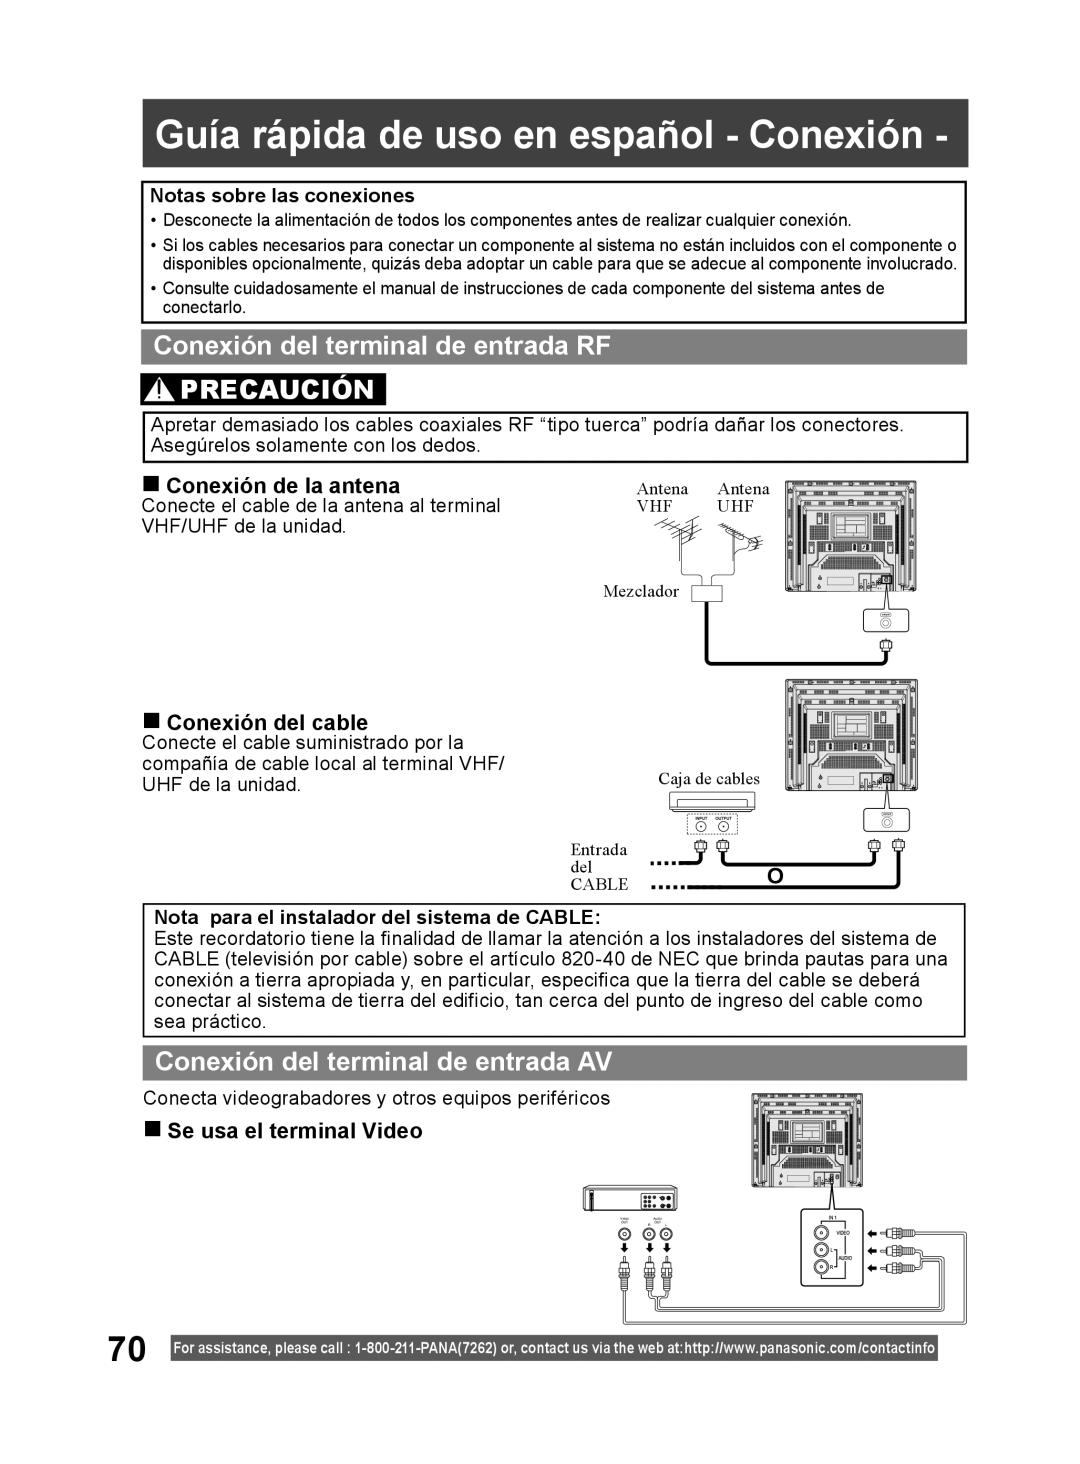 Panasonic PV DF2004, PV DF2704 Guía rápida de uso en español - Conexión, Conexión del terminal de entrada RF PRECAUCIÓN 